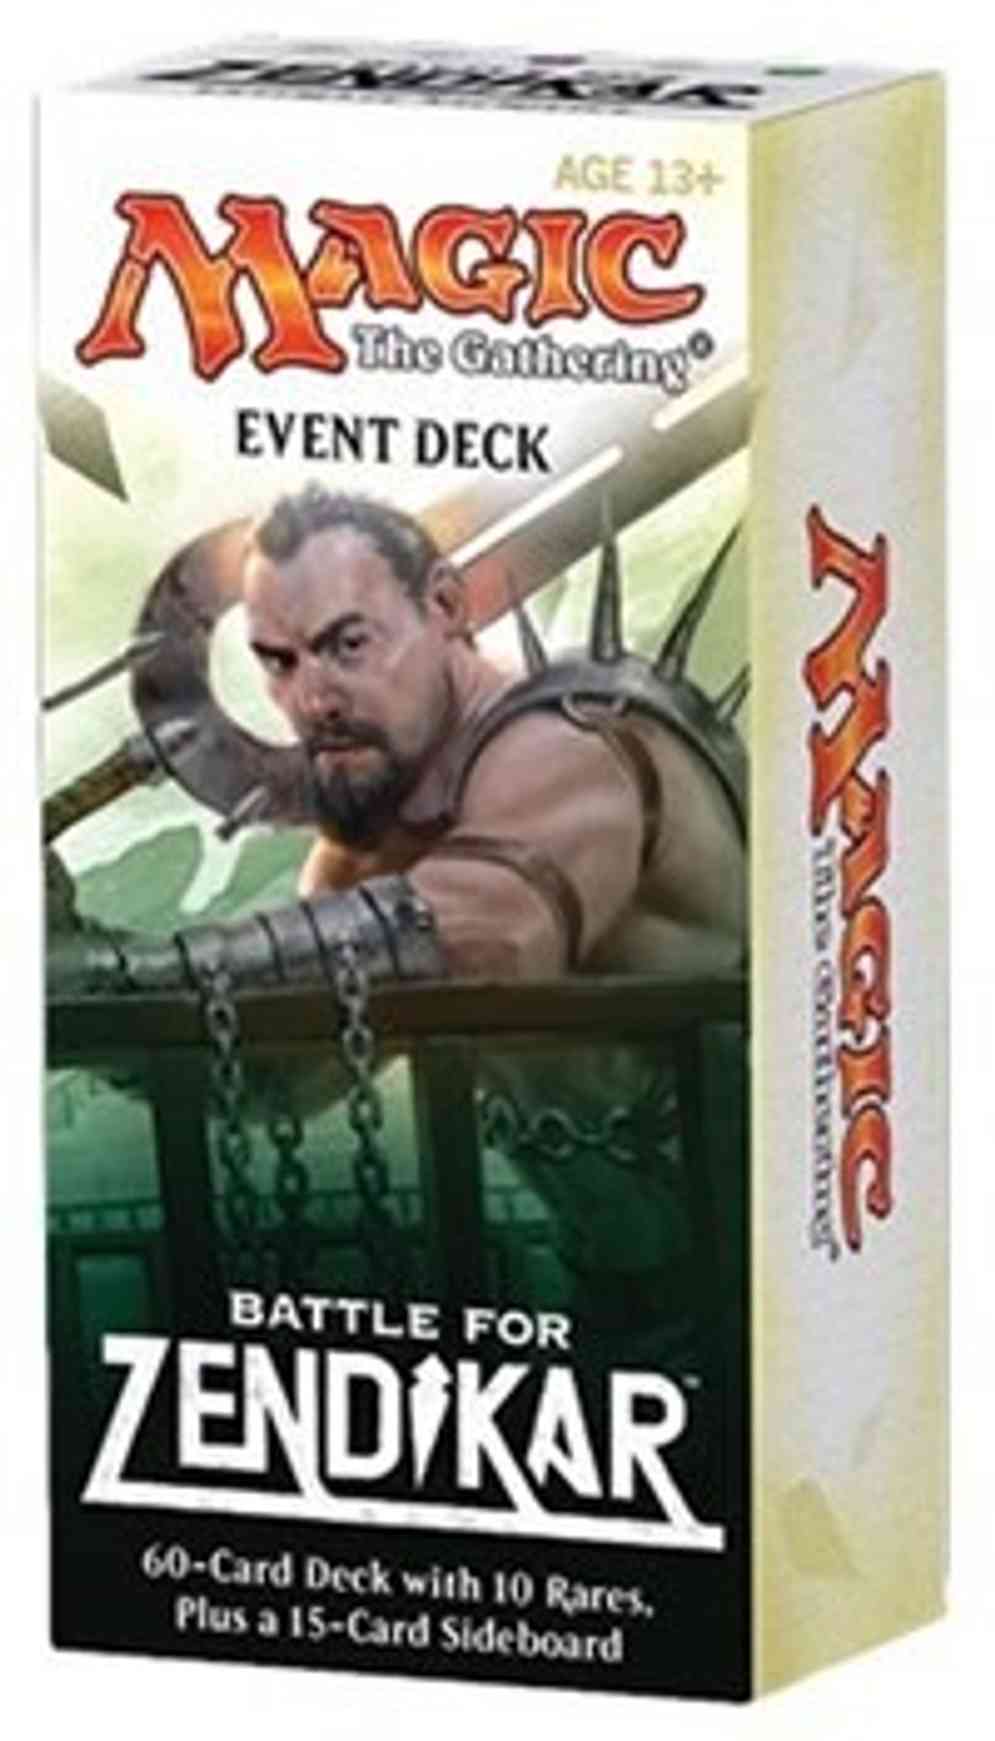 Battle for Zendikar - Event Deck magic card front